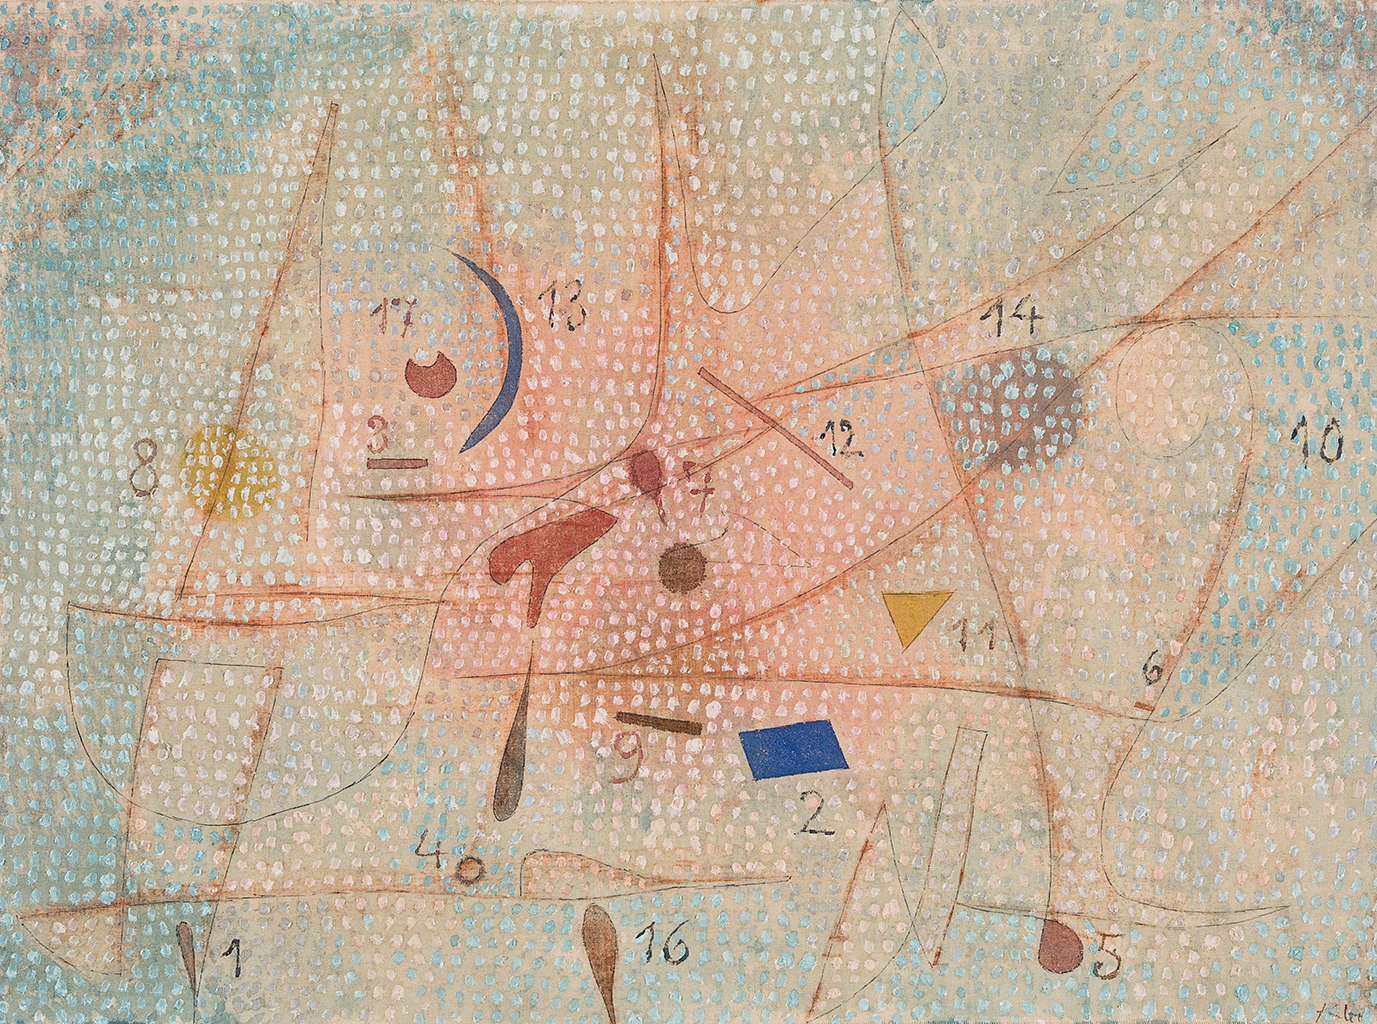  Paul Klee, entre-mondes